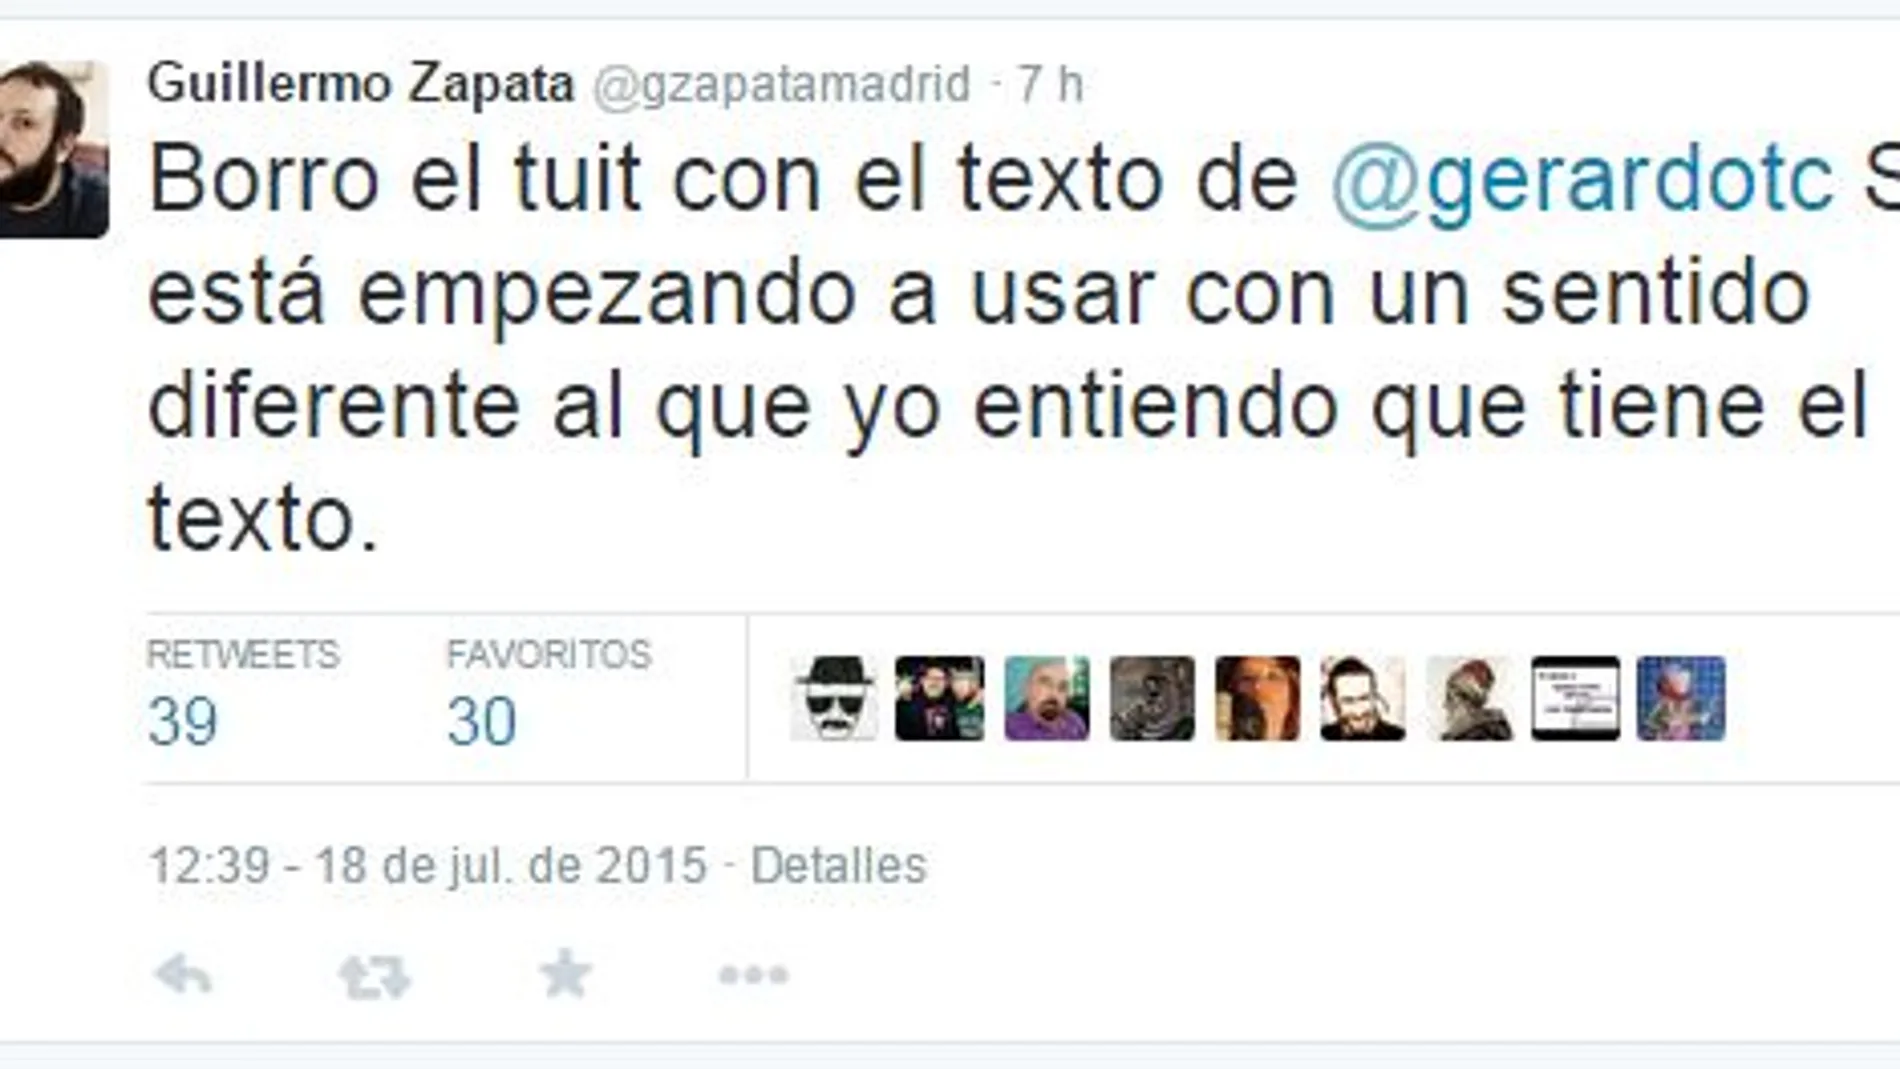 Zapata retuitea un artículo en el que se compara a Schäuble con el nazi Eichman